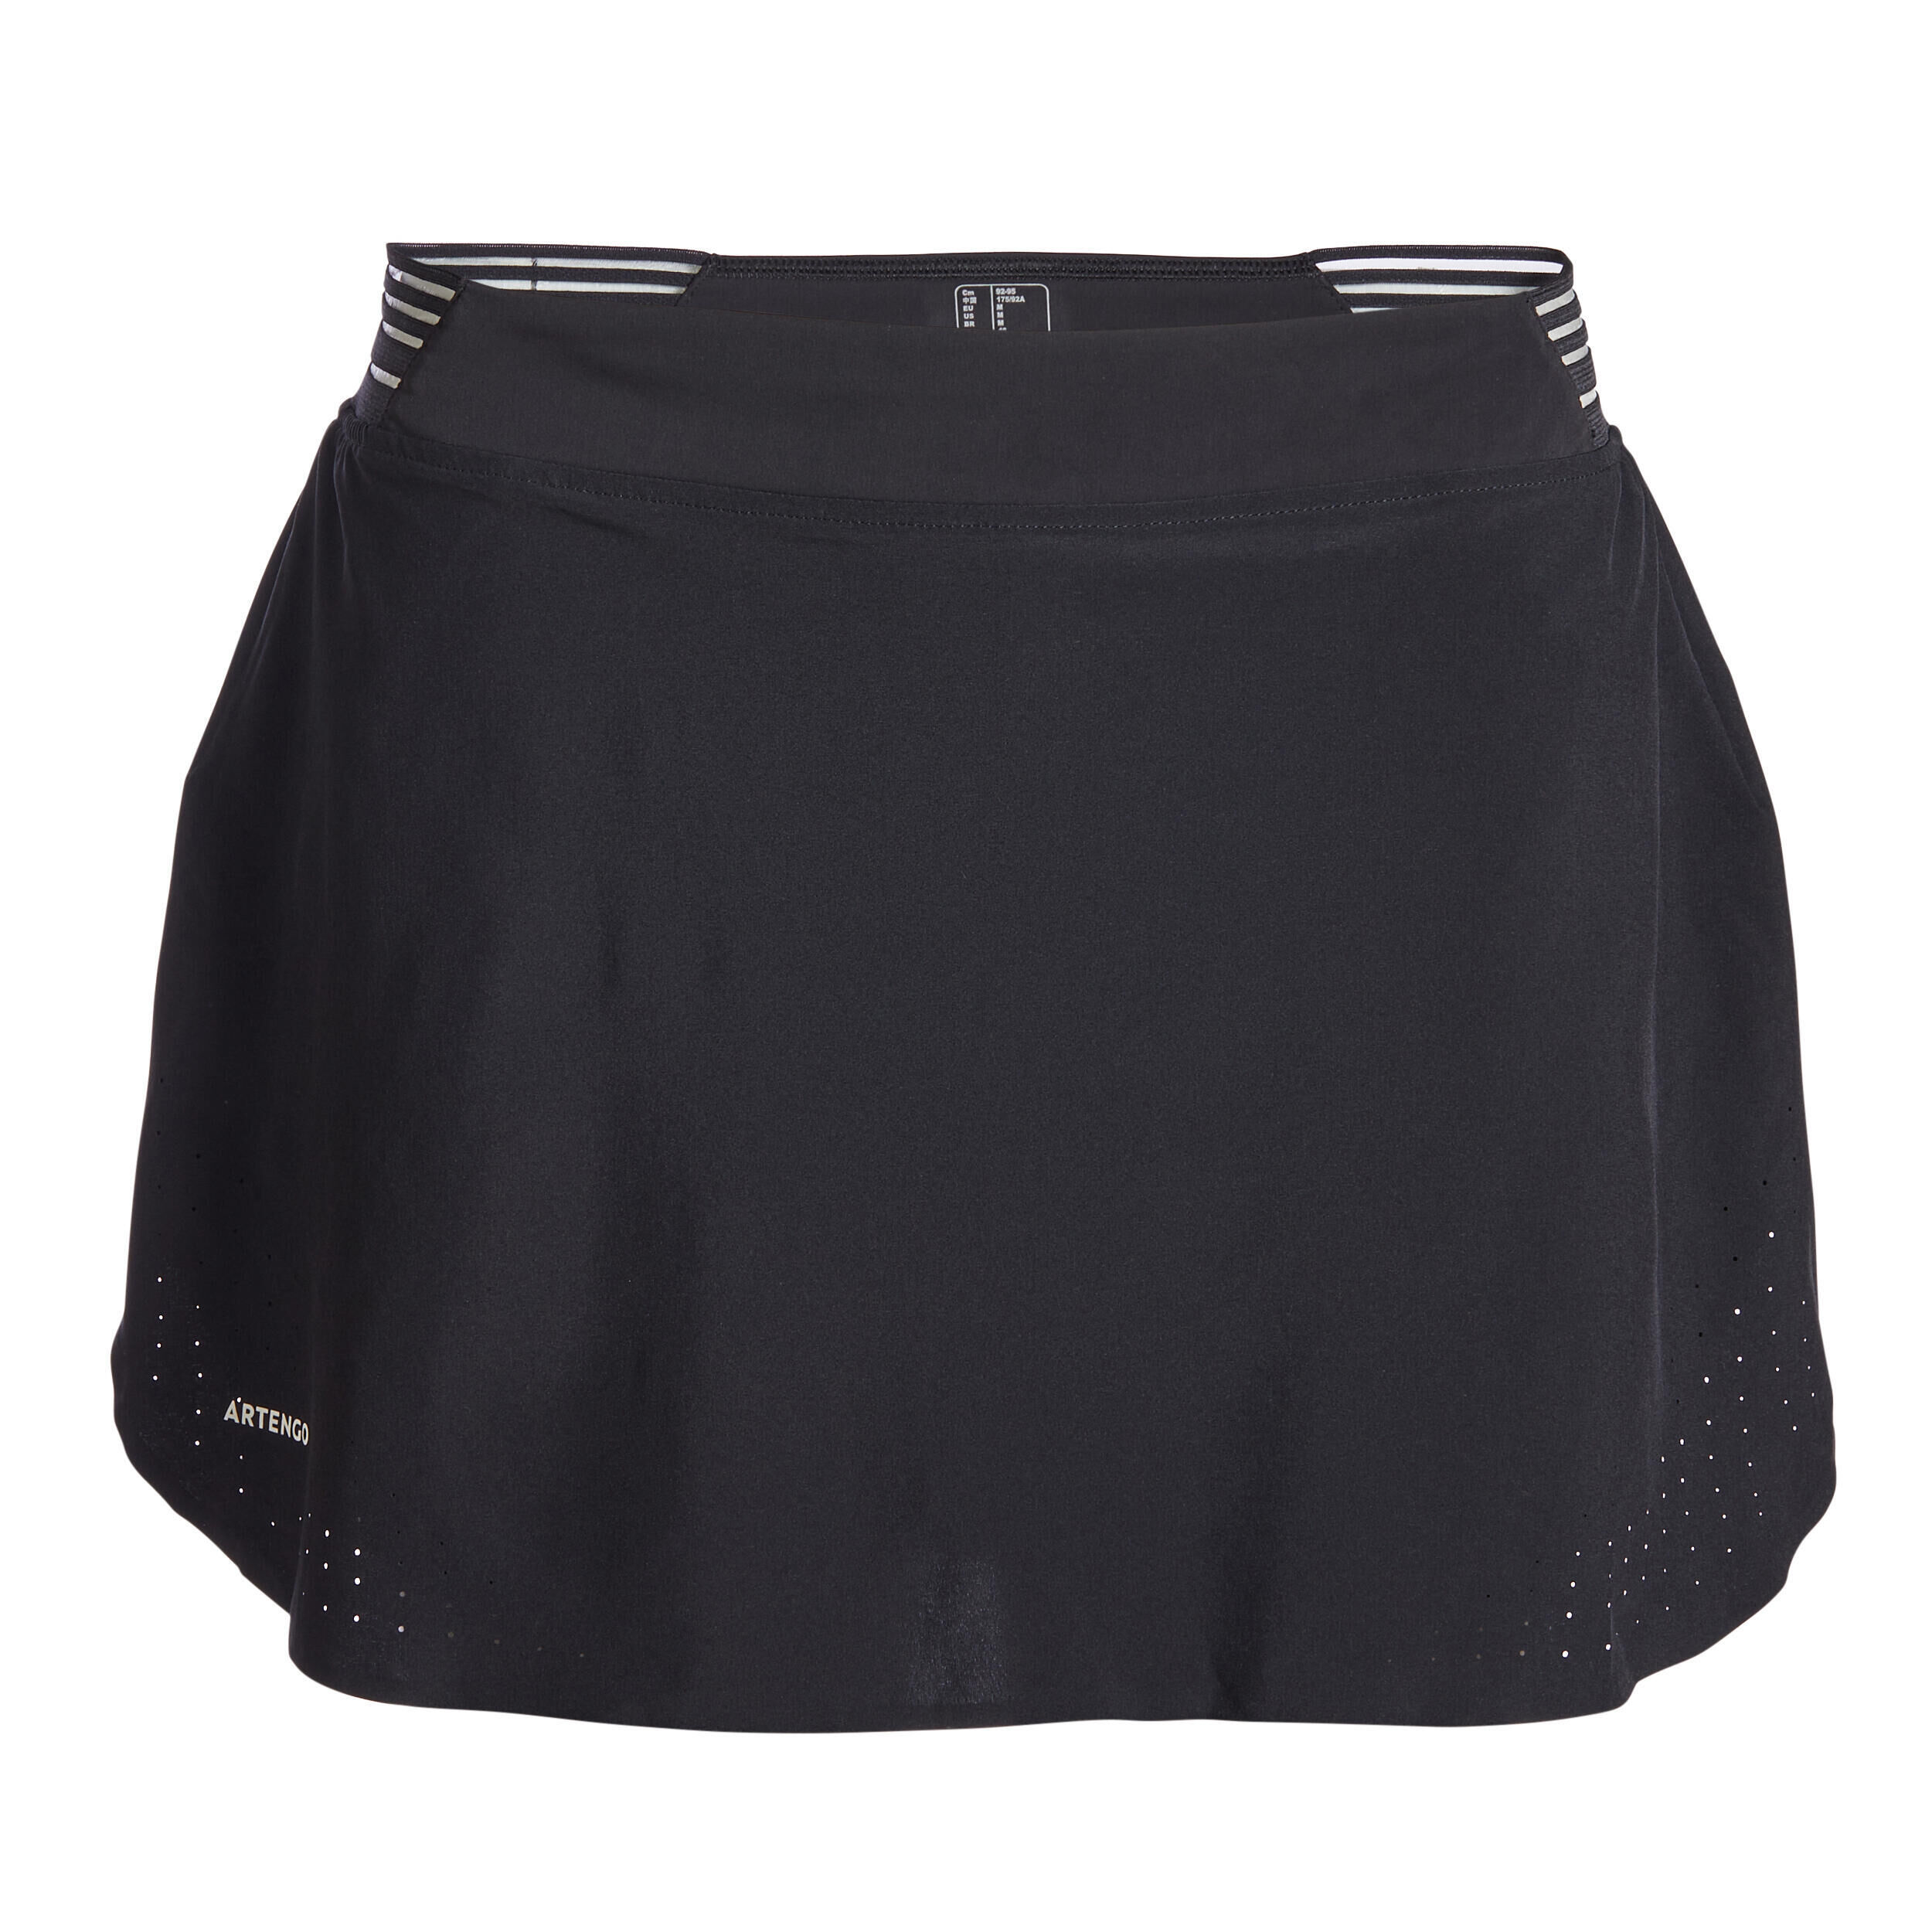 ARTENGO Refurbished Womens Tennis Skirt Light 900 - A Grade